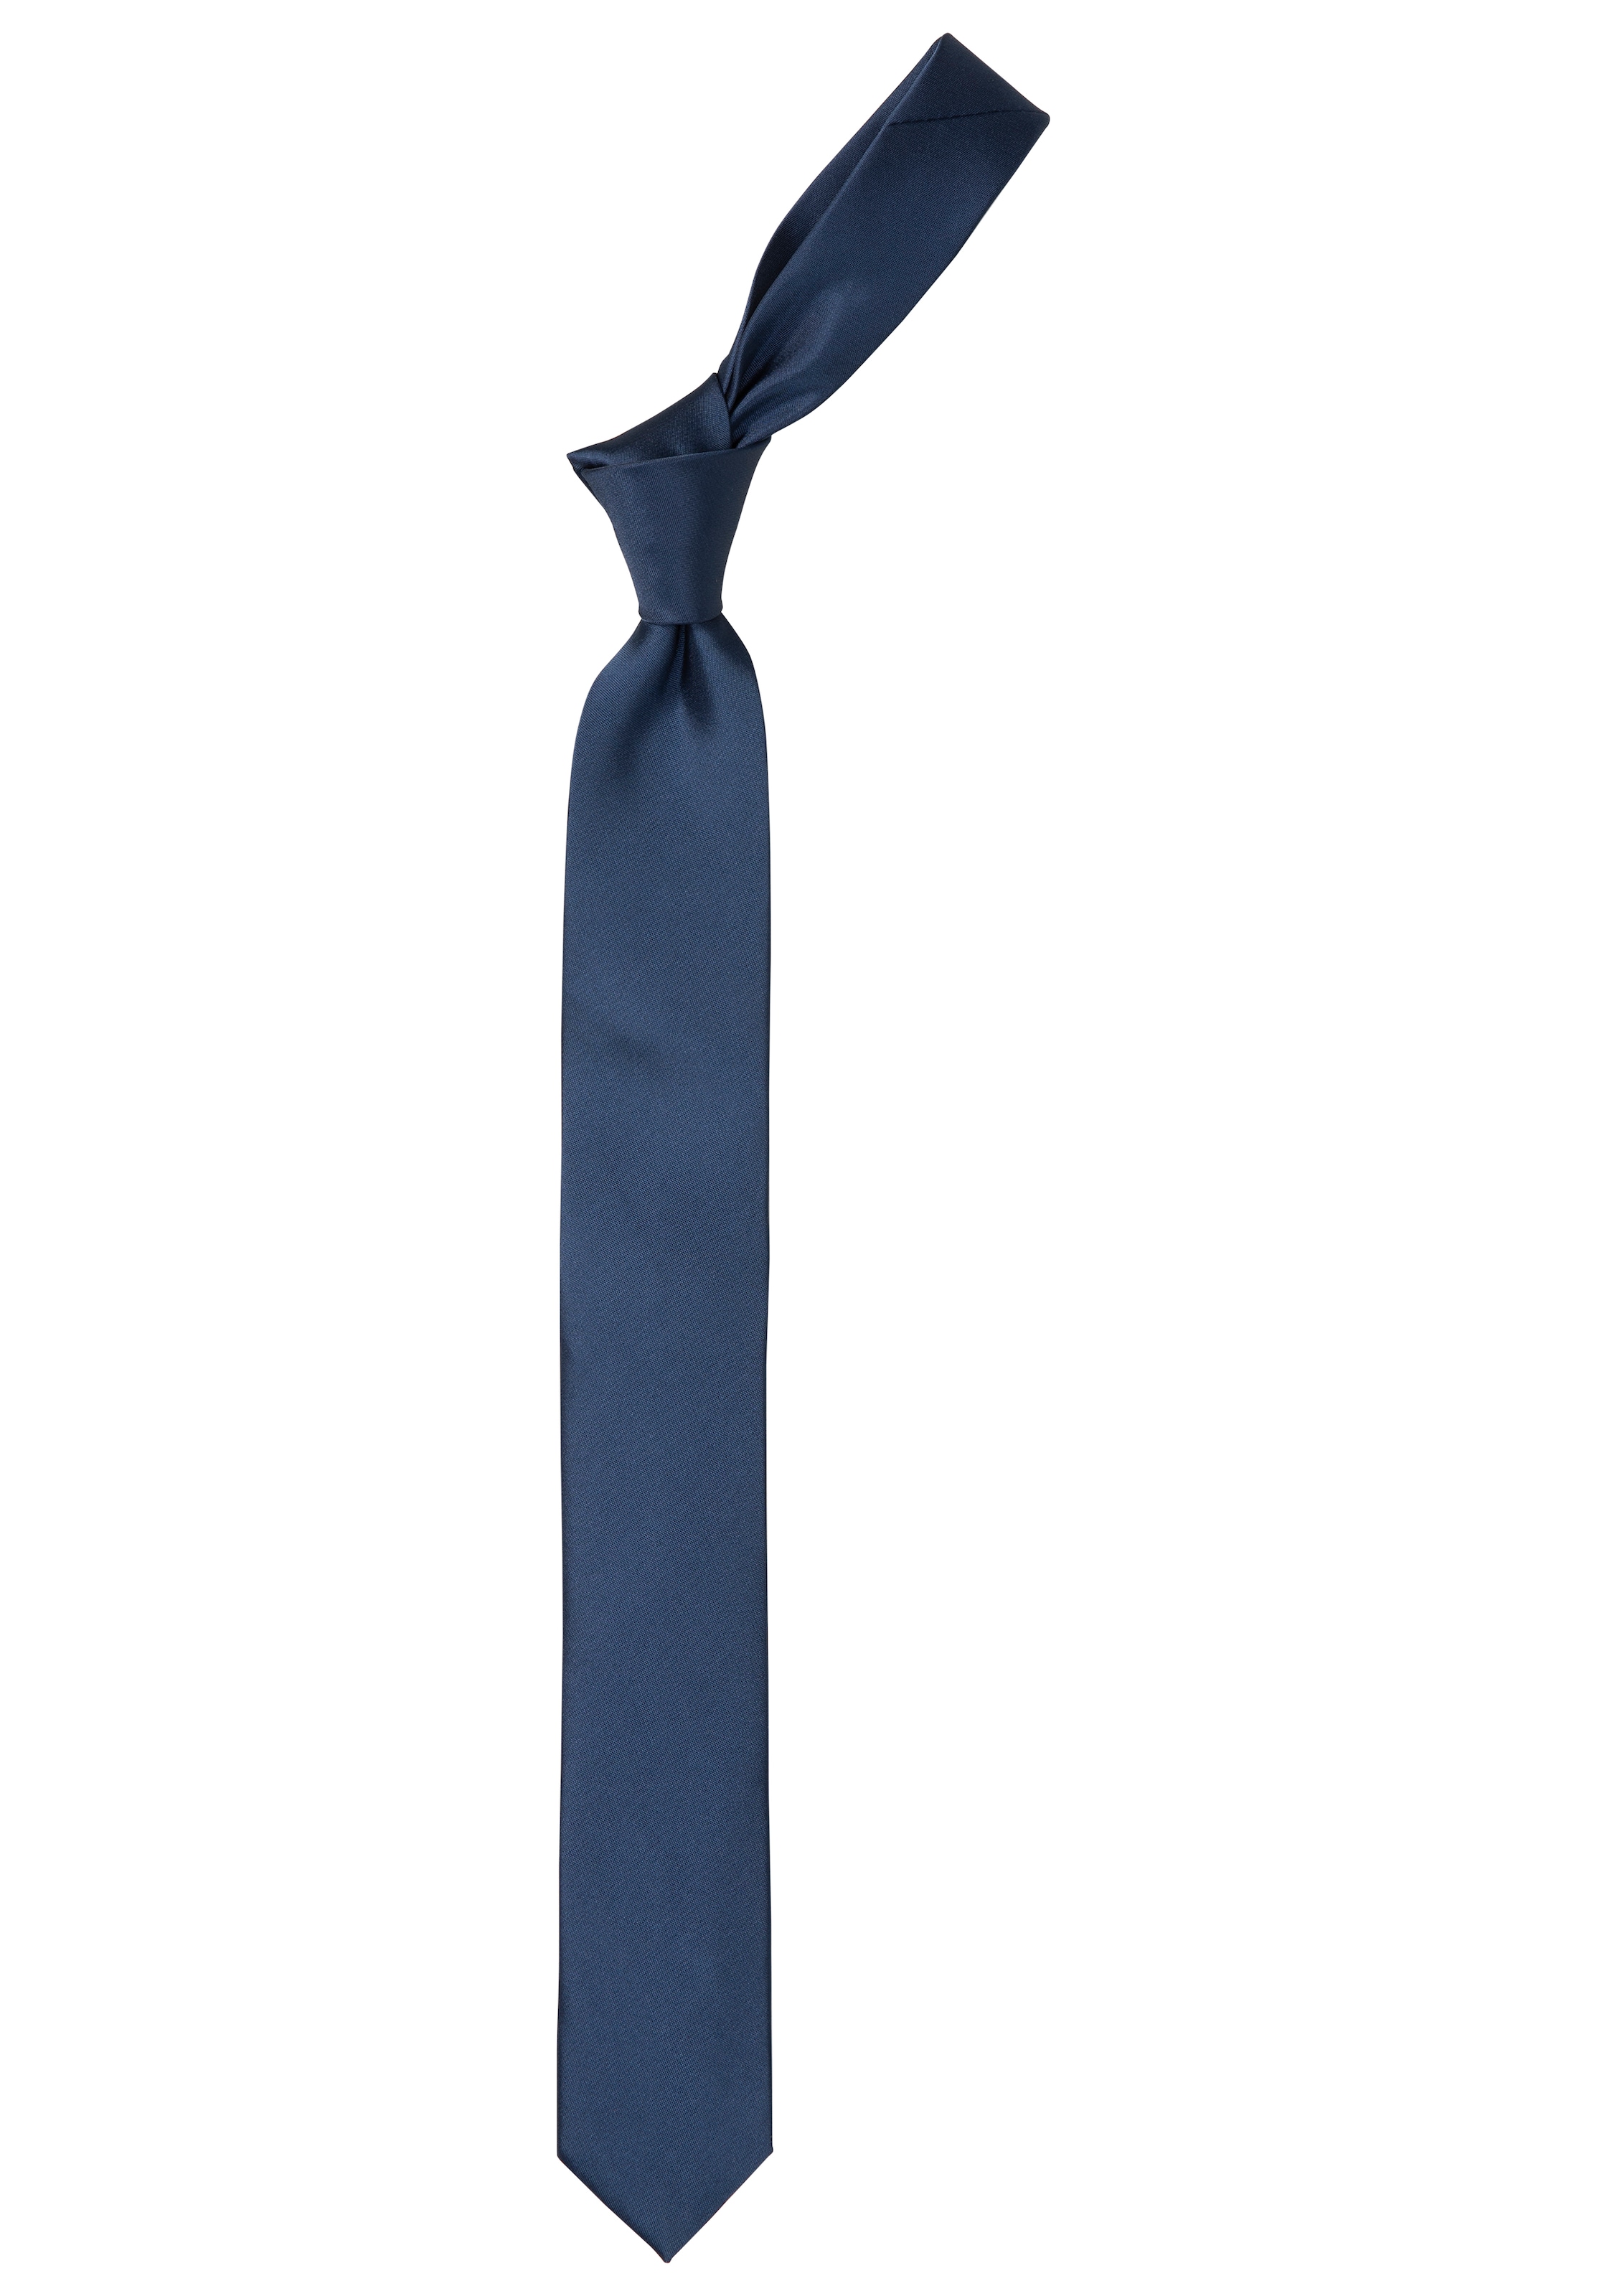 Man's World Krawatte, in klassischen Uni-Farben und Slim-Breite - NEUE KOLLEKTION